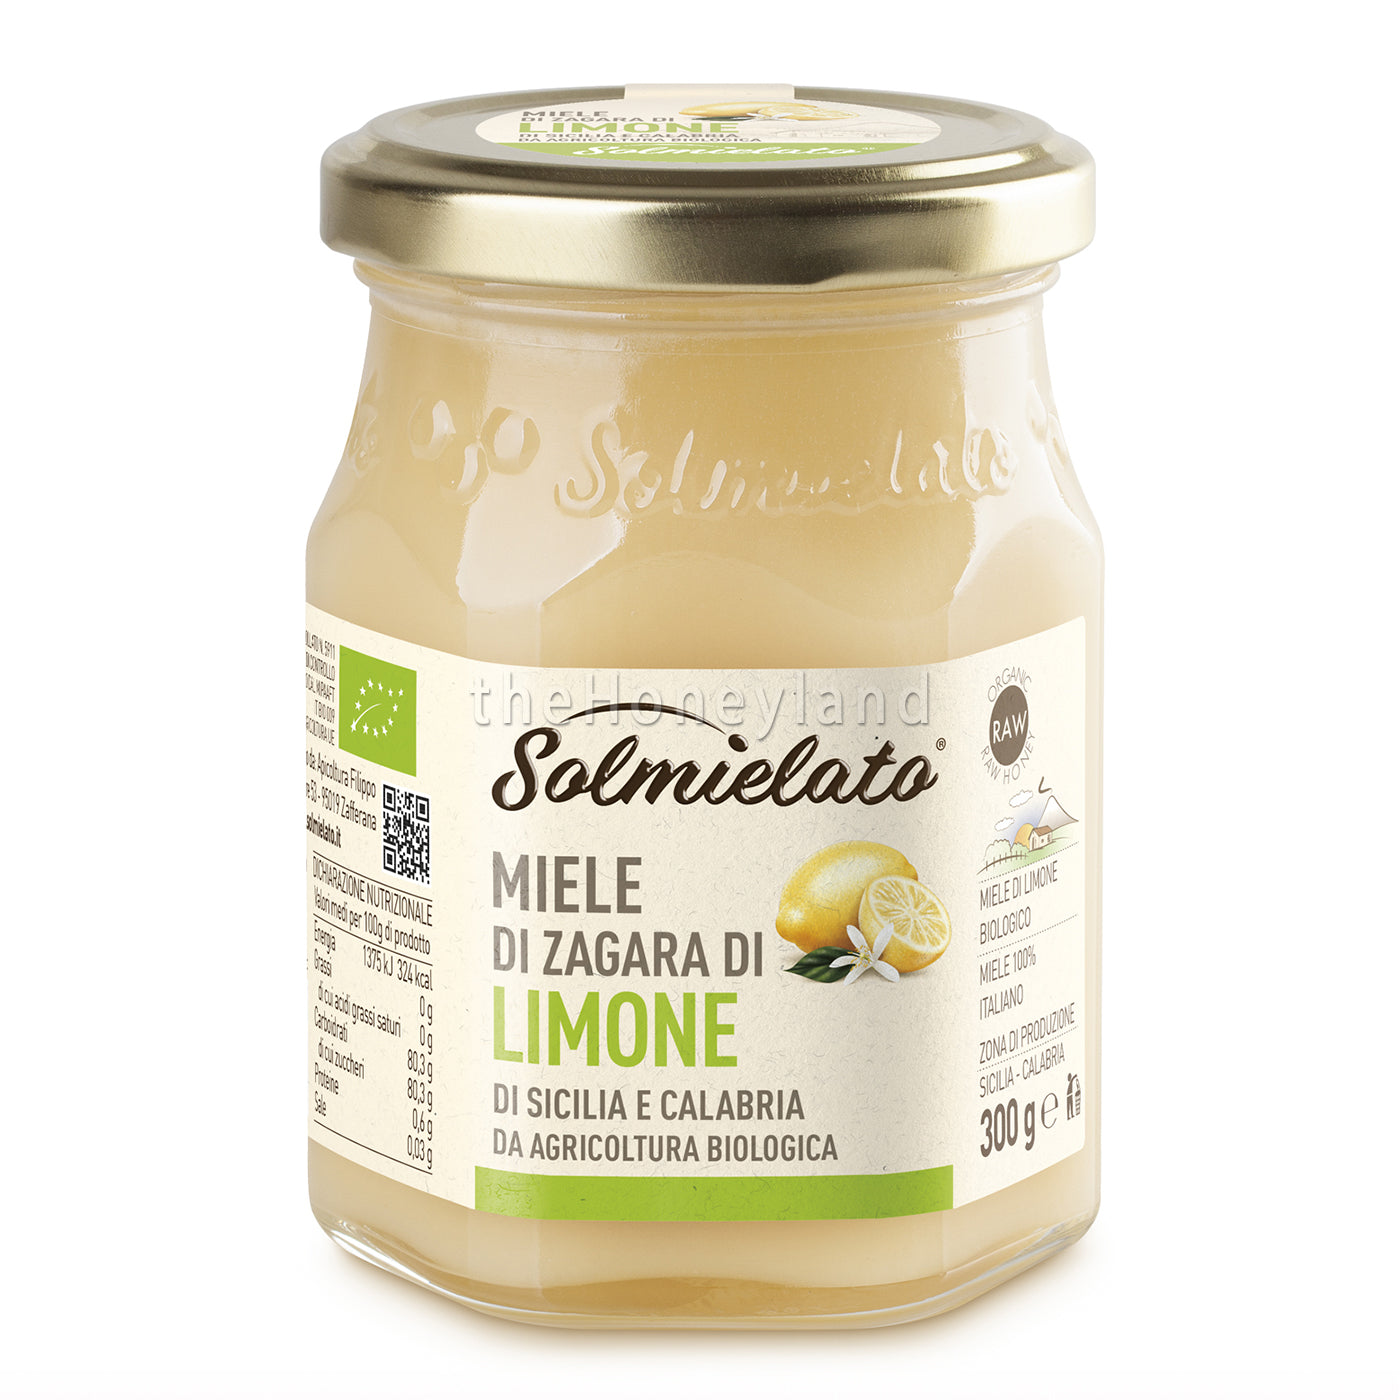 Miele di limone bio Costa Jonica e Tirrenica della Calabria